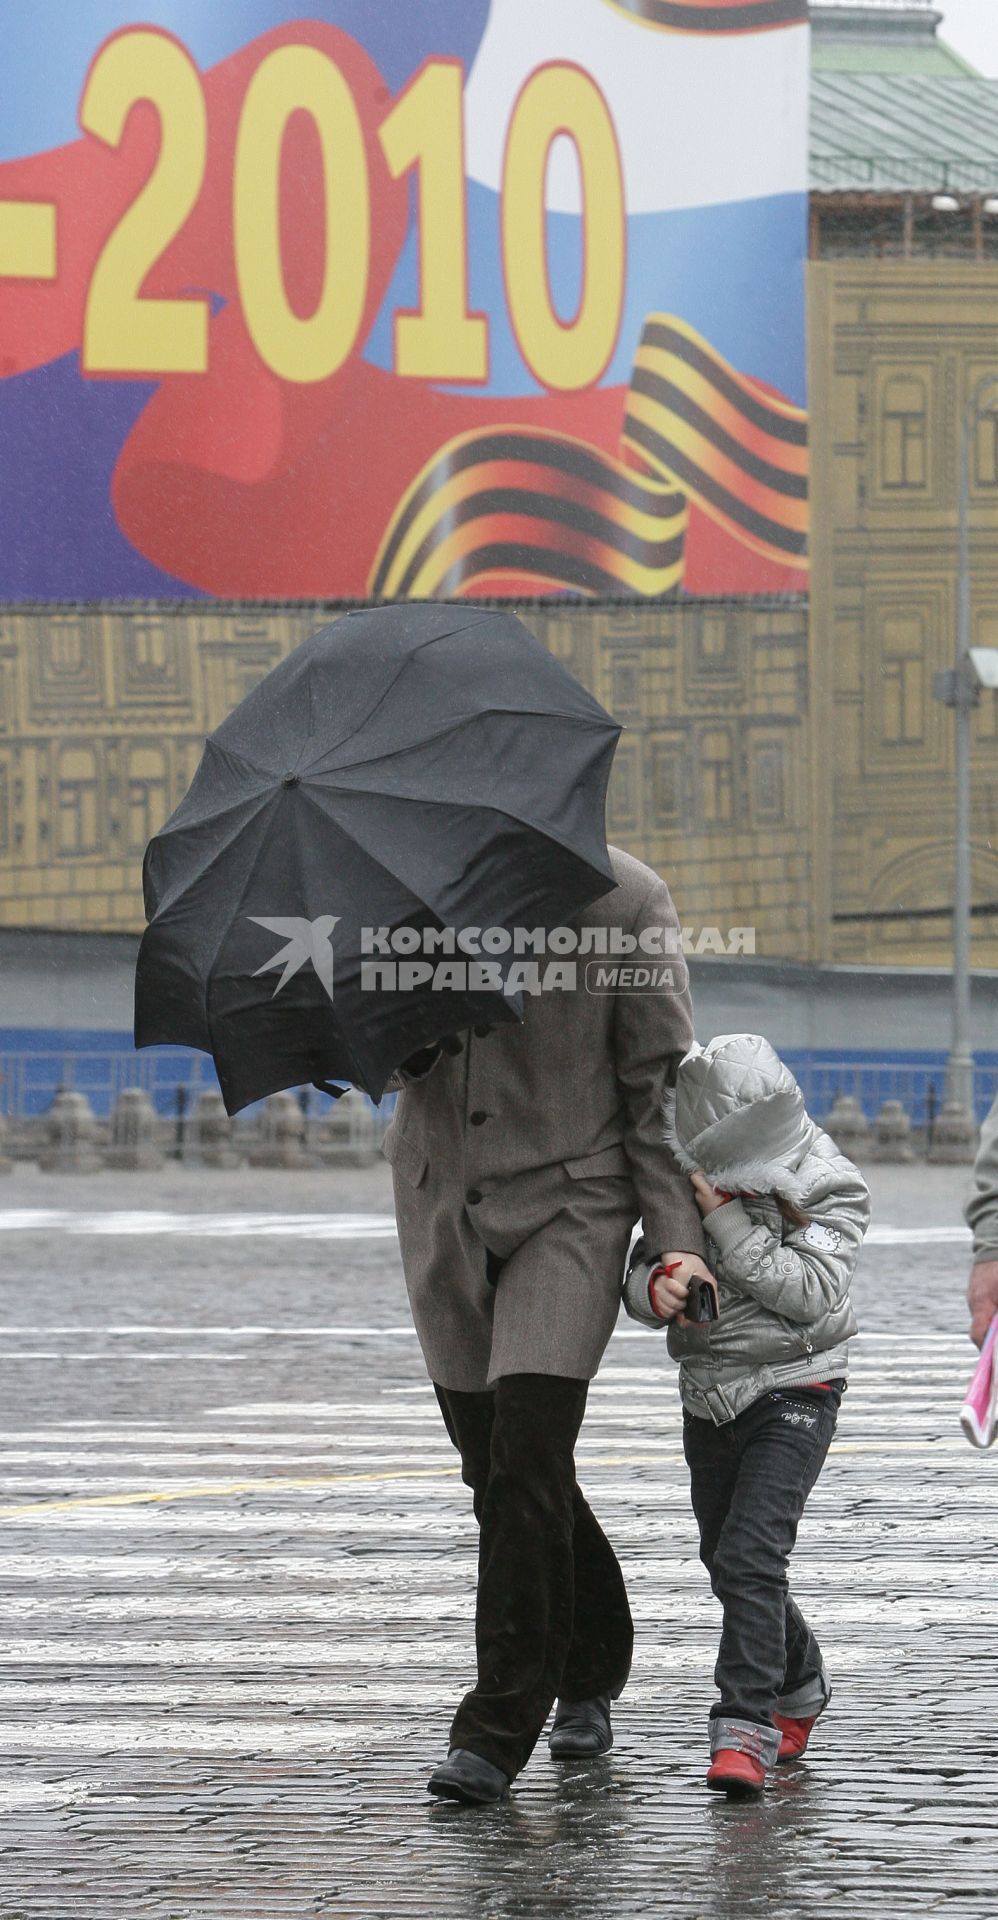 Папа с ребенком идут под зонтом.